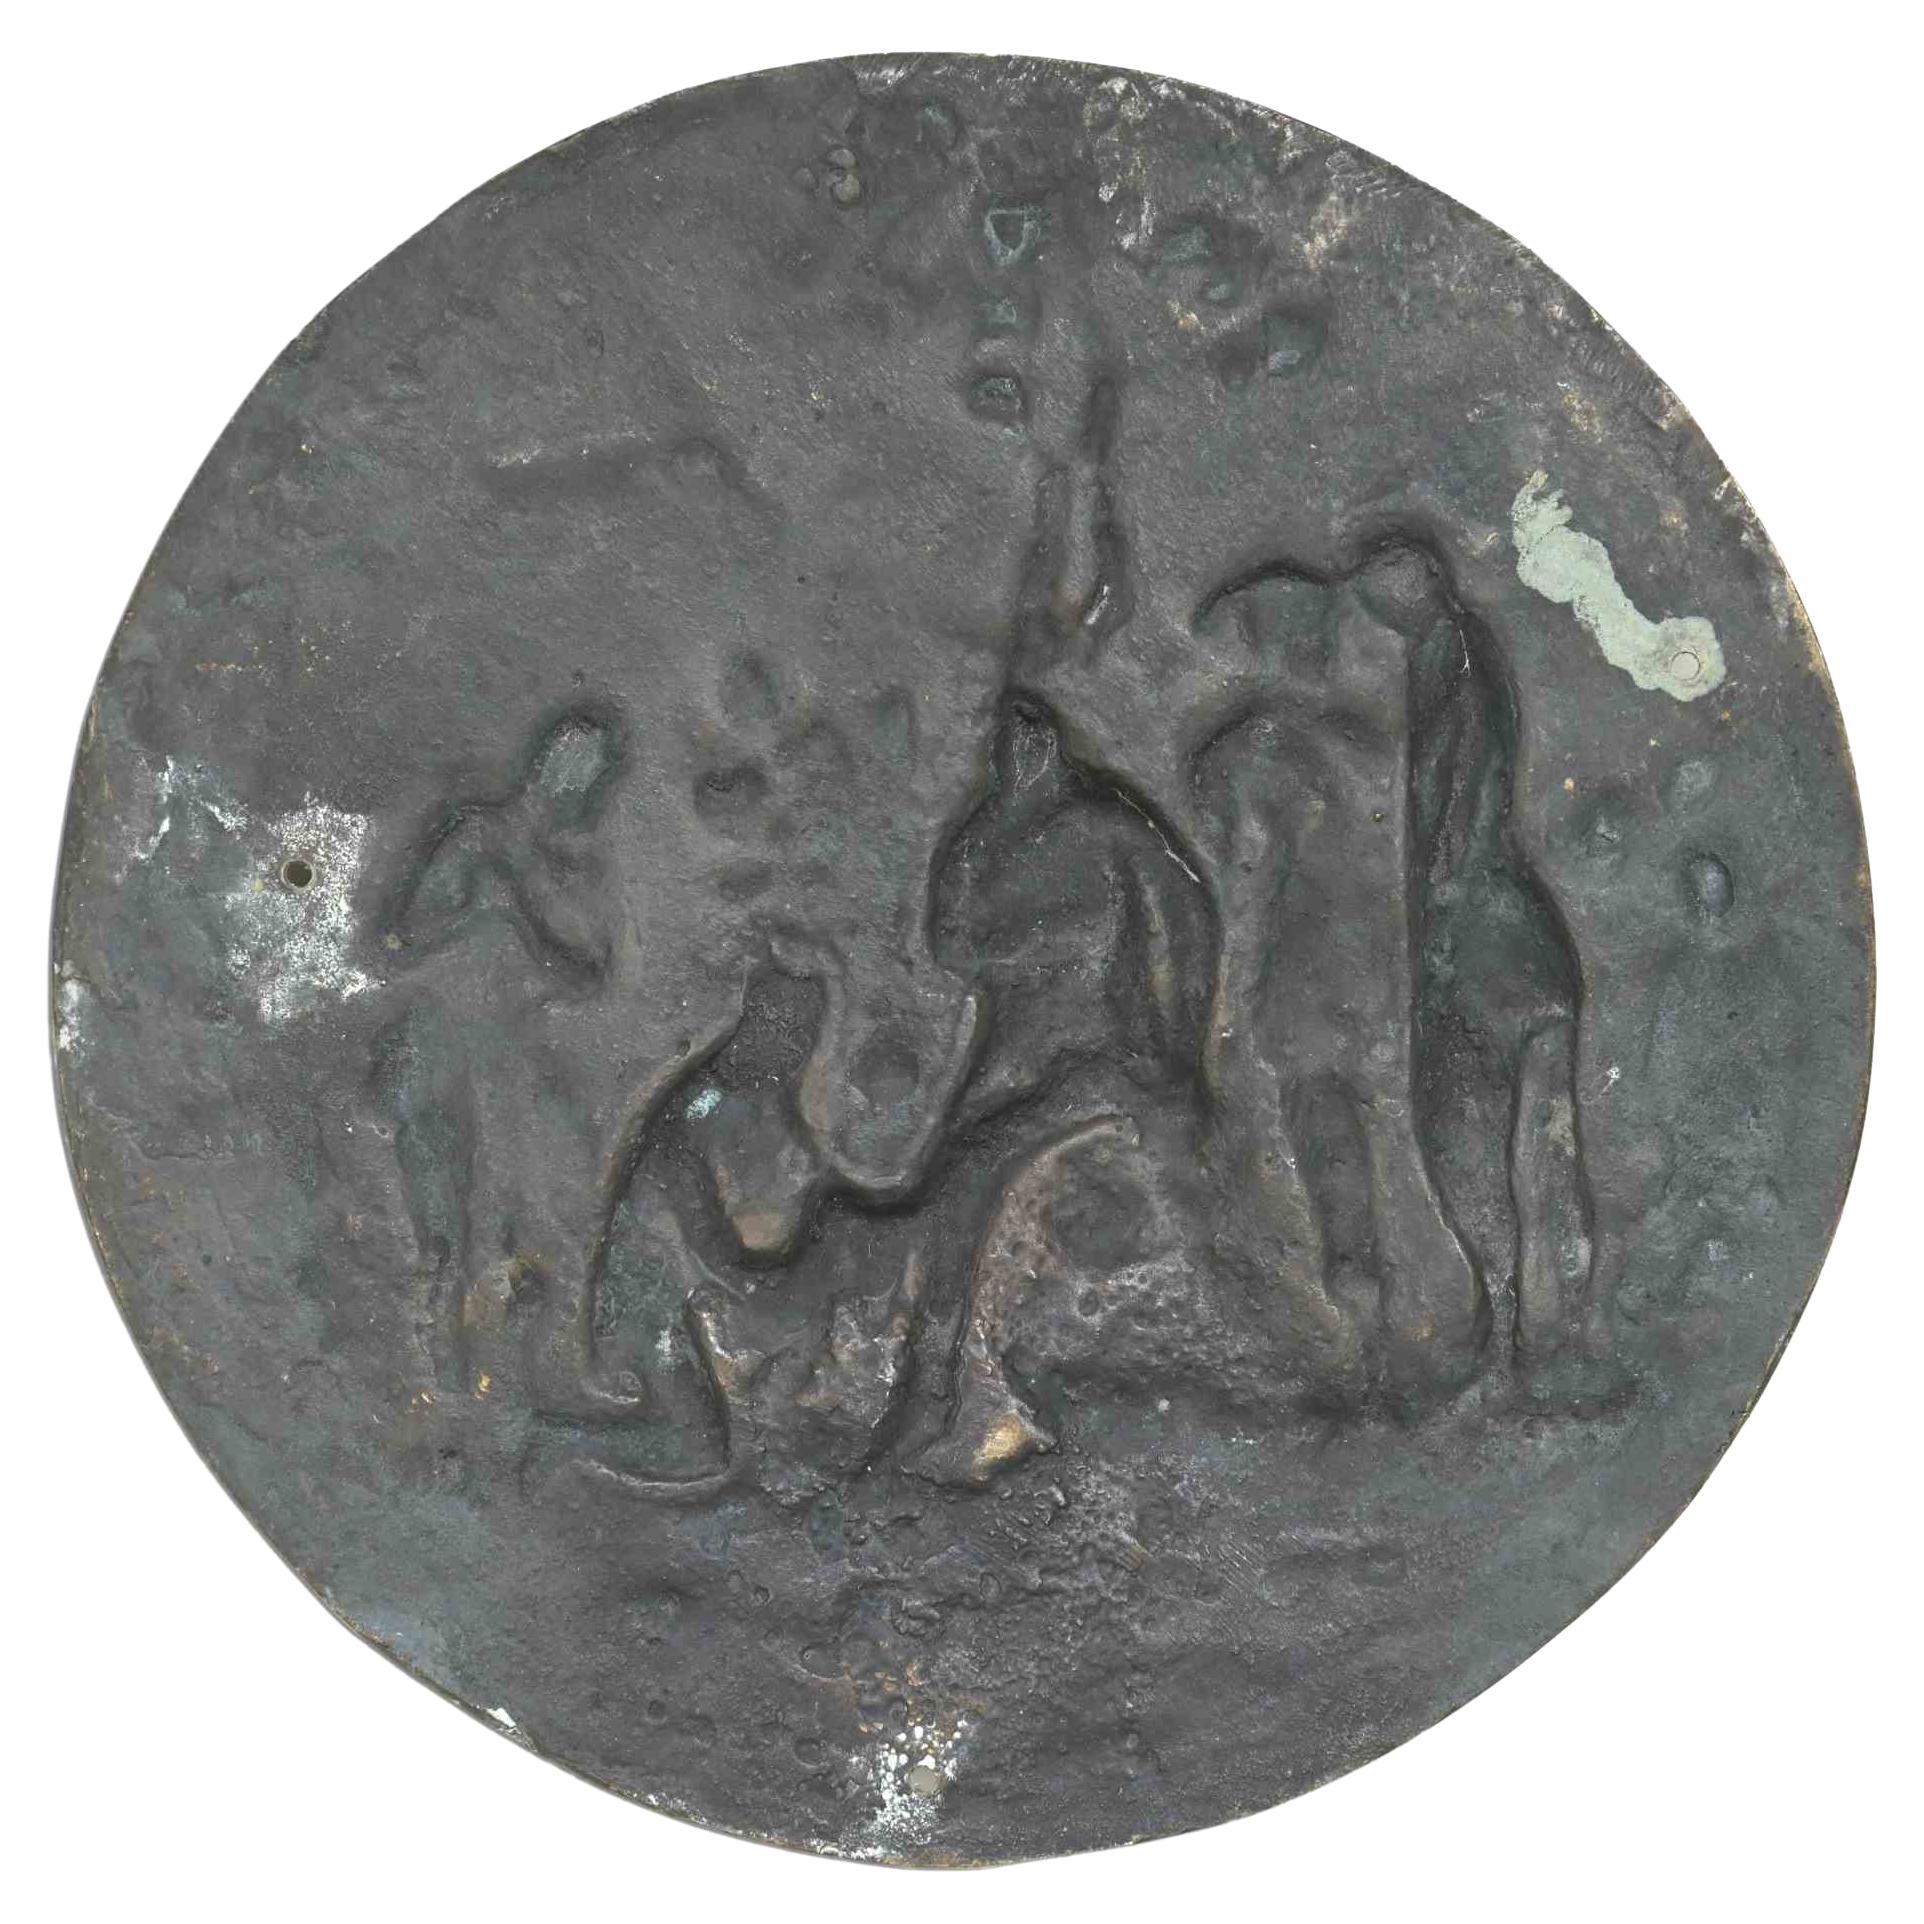 La médaille de Garibaldi est une médaille originale en bronze réalisée par un Artistics de la fin du 19ème siècle. 

Cette médaille de bronze a été réalisée à l'occasion de la blessure de Garibaldi sur l'Aspromonte, en Italie.

Collectional cet